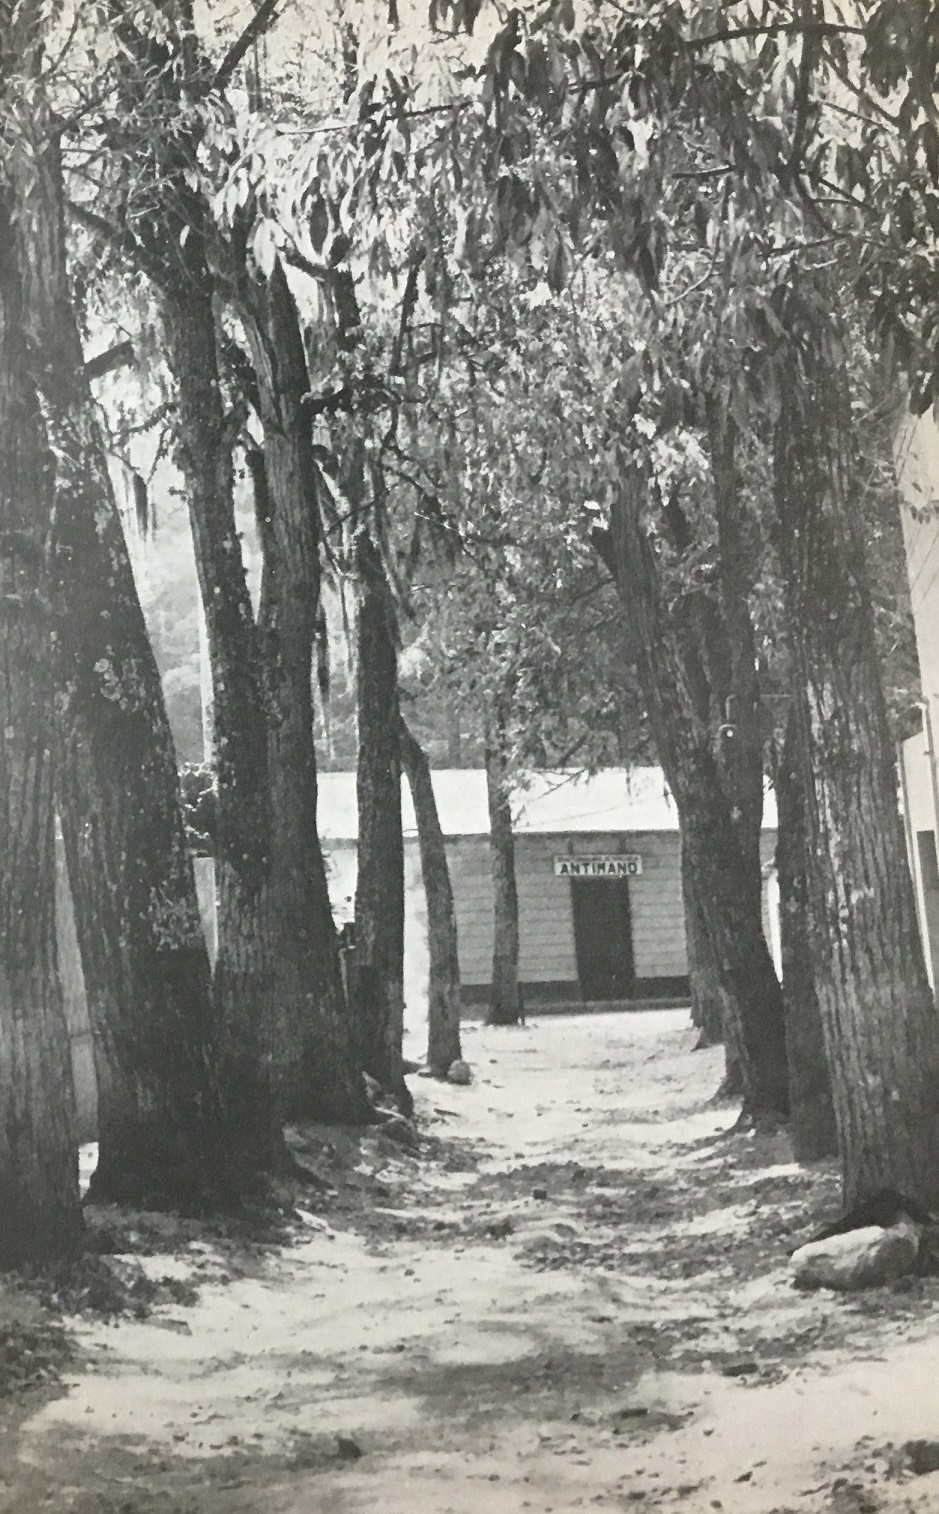 Avenida con viejos árboles en el callejón de la estación del ferrocarril. Fotografía de Rafael Hueck Condado (Supermán), 1952